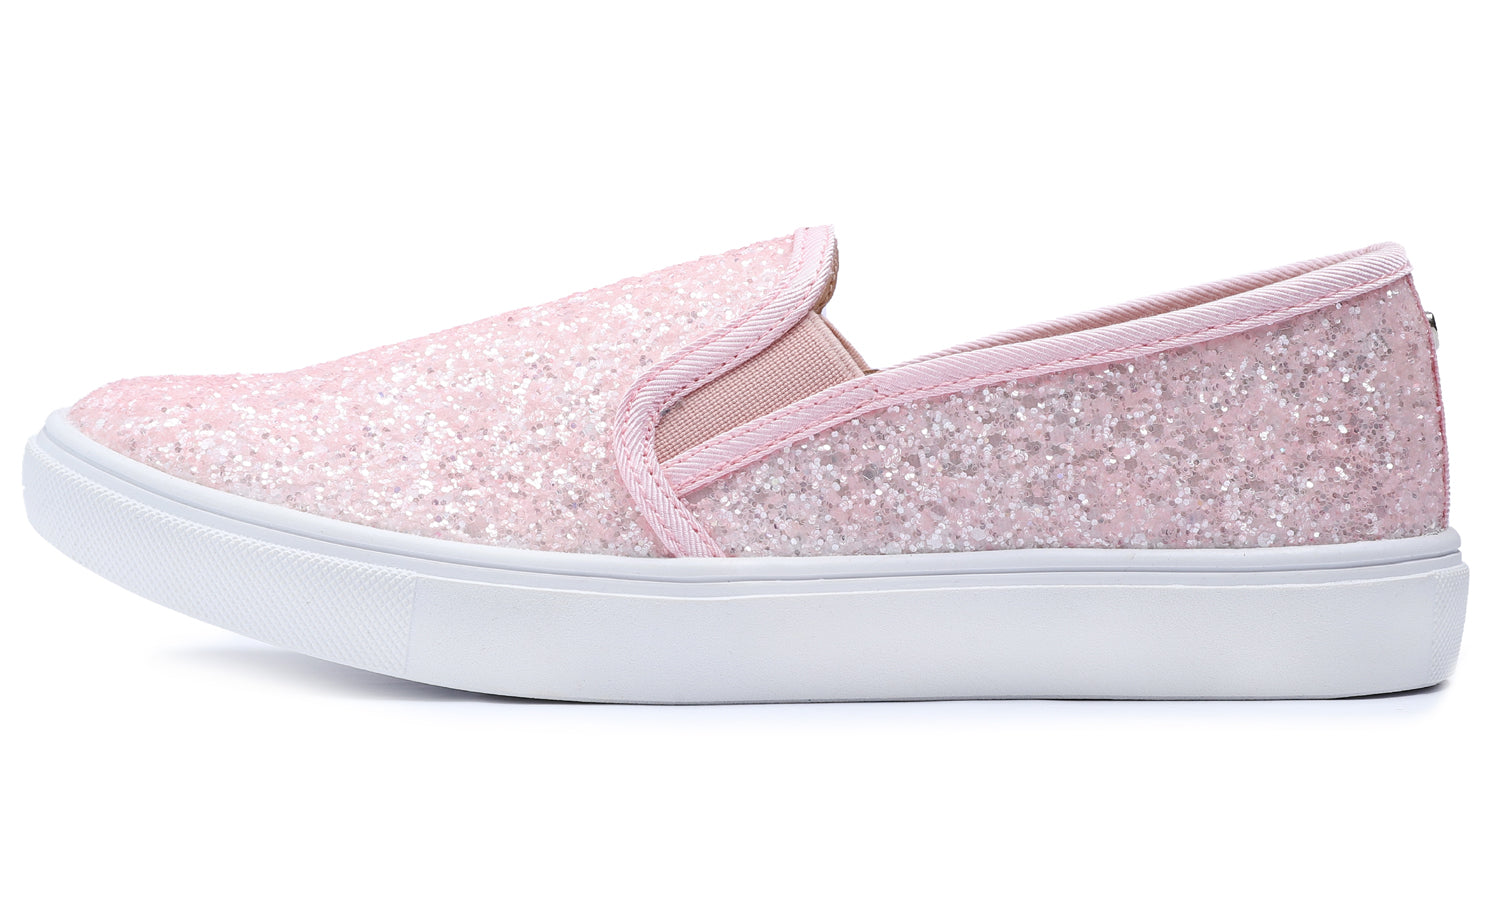 Feversole Women's Glitter Baby Pink Slip On Sneaker Casual Flat Loafers